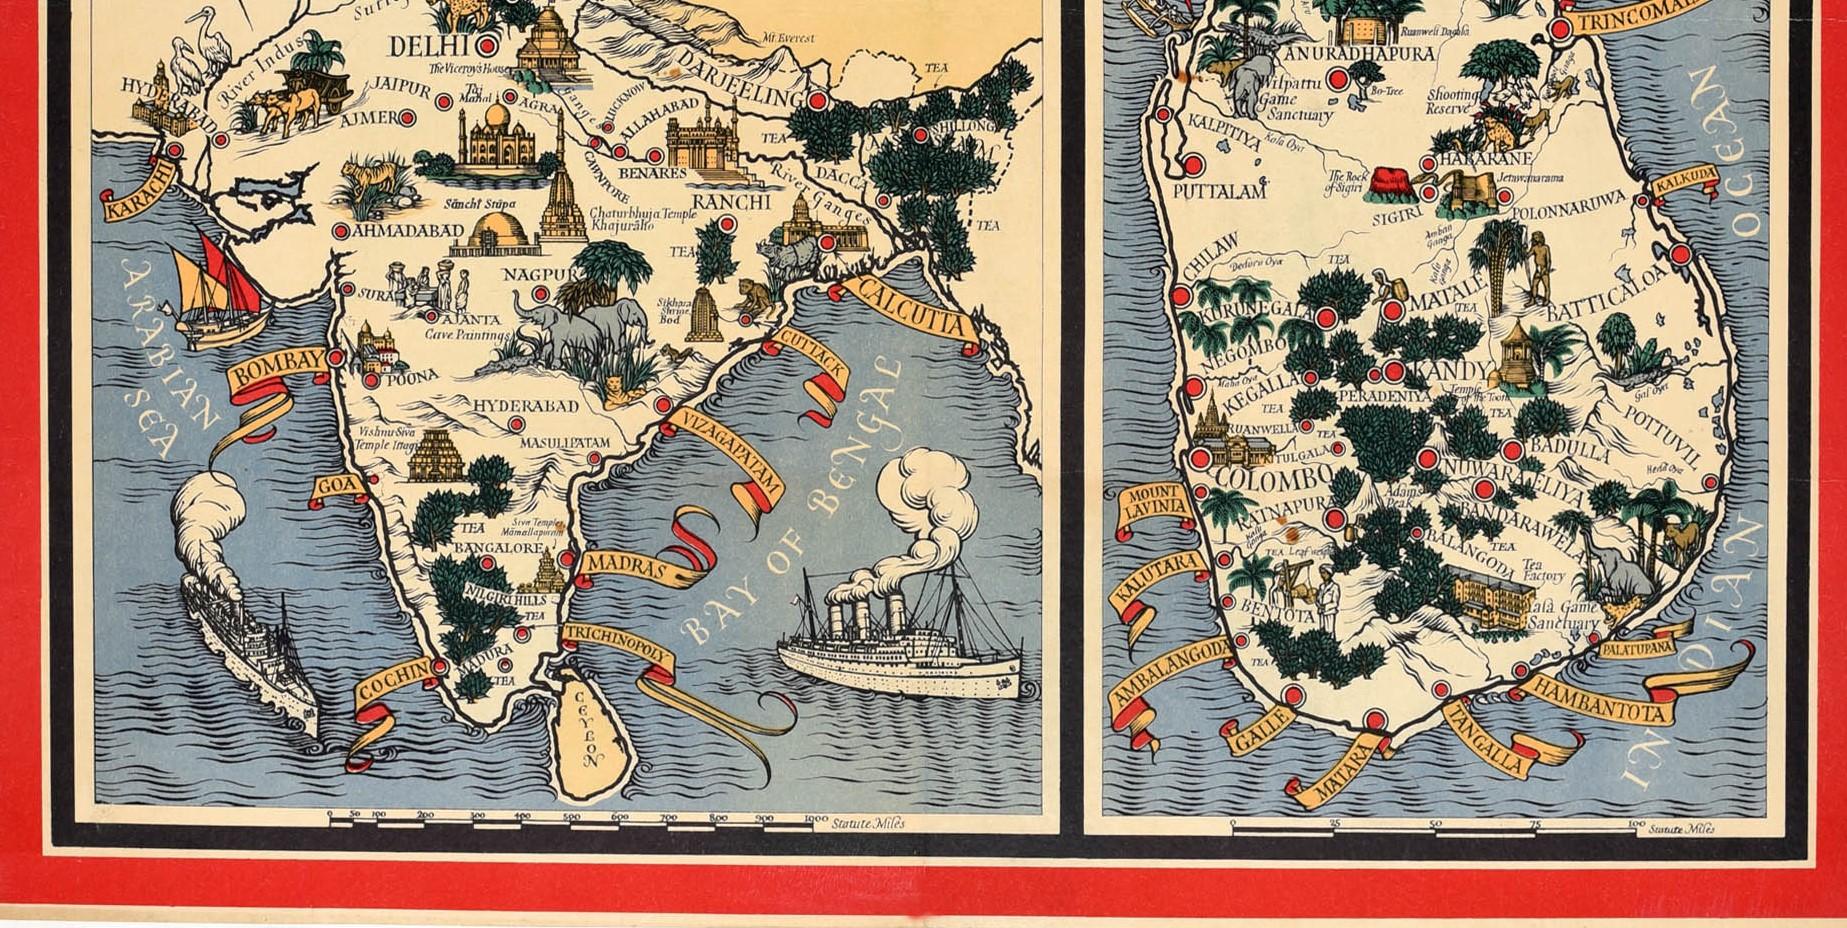 Affiche publicitaire vintage originale - Tea An Empire Industry Where Our Tea Comes From. Rare petite version représentant des cartes illustrées et colorées de l'Inde et de Ceylan (aujourd'hui Sri Lanka) avec les noms des villes dans des bannières